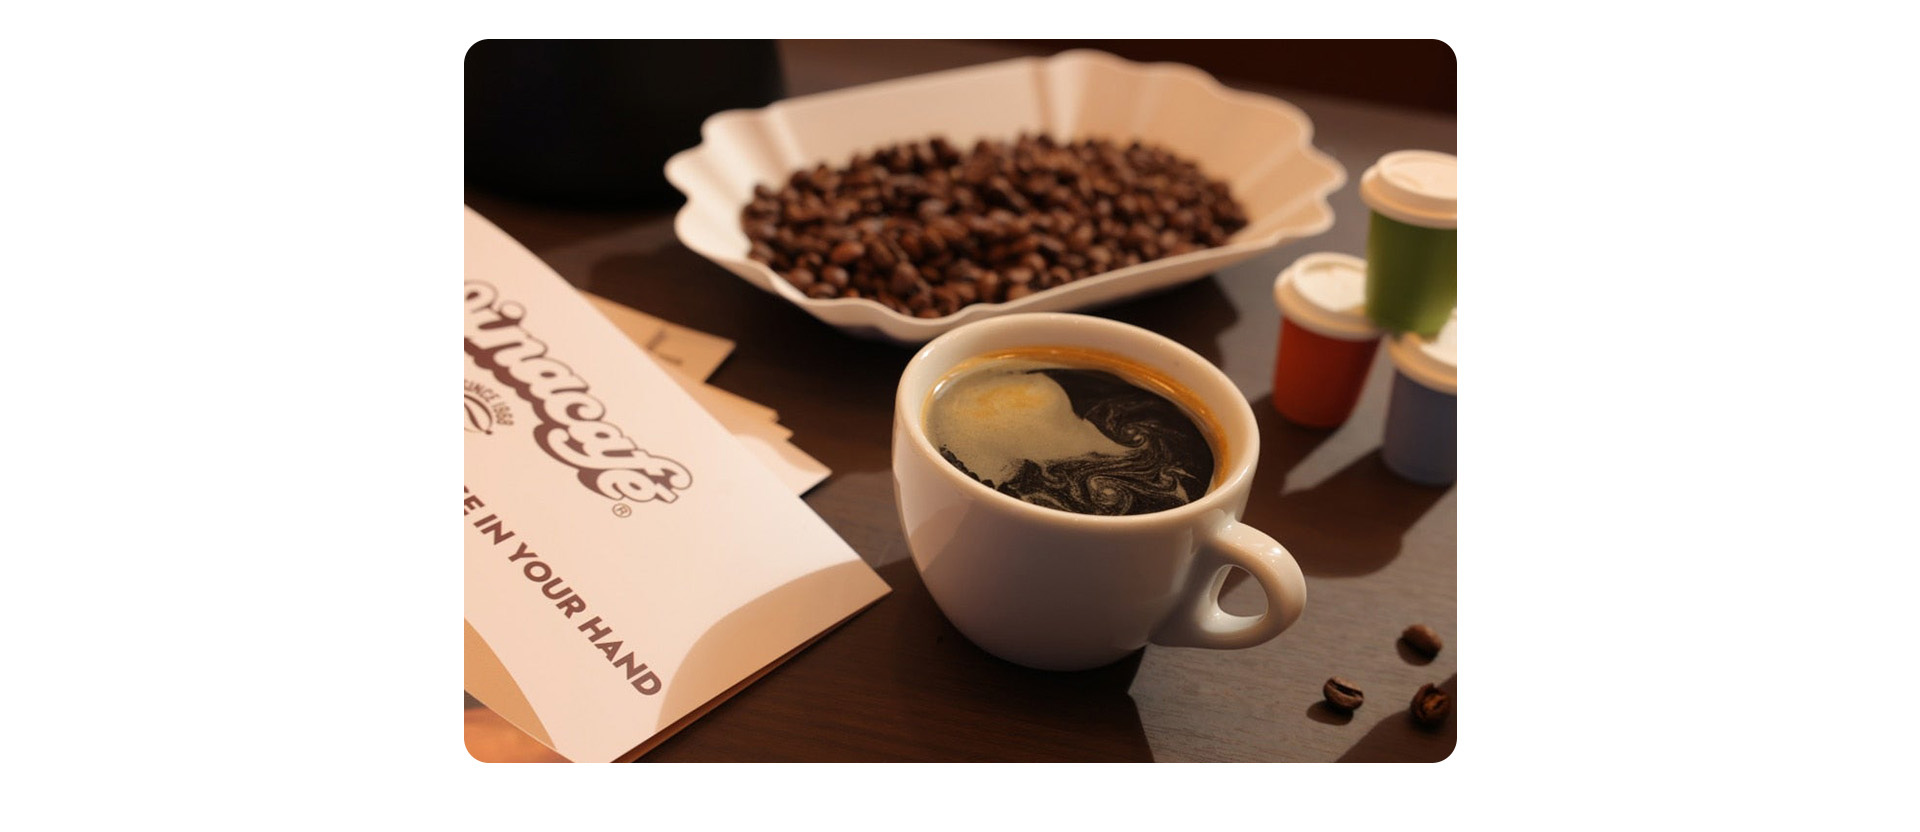 Nhìn lại hành trình ghi dấu ấn tượng tại Hàn Quốc của thương hiệu cà phê Việt Vinacafé - Ảnh 4.